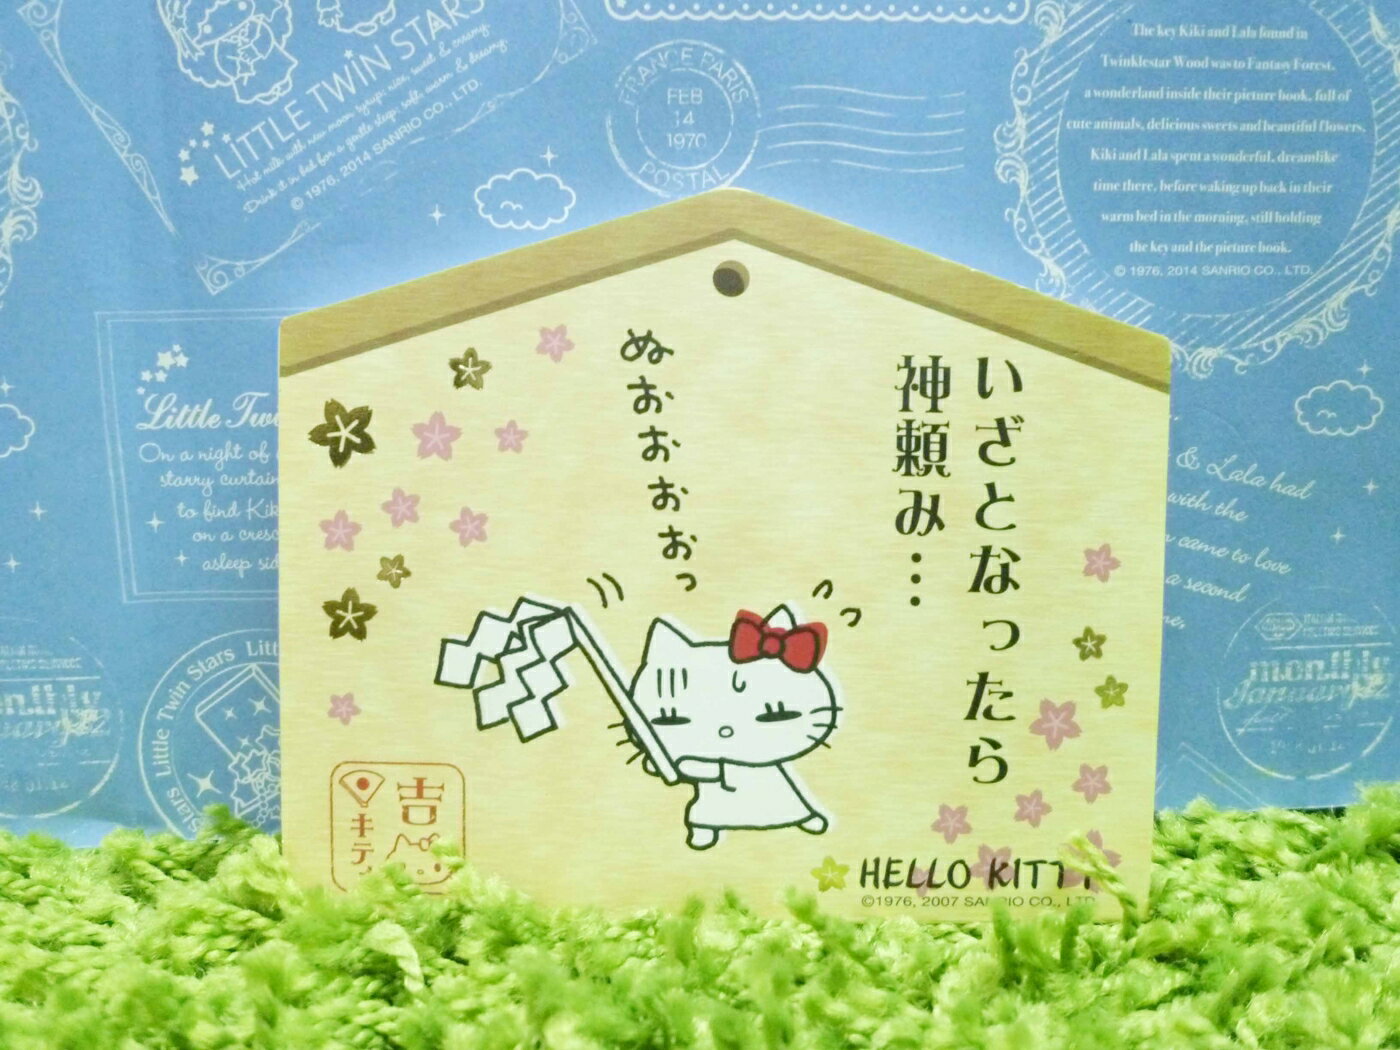 【震撼精品百貨】Hello Kitty 凱蒂貓 造型便條紙-祈福-吉圖案【共1款】 震撼日式精品百貨